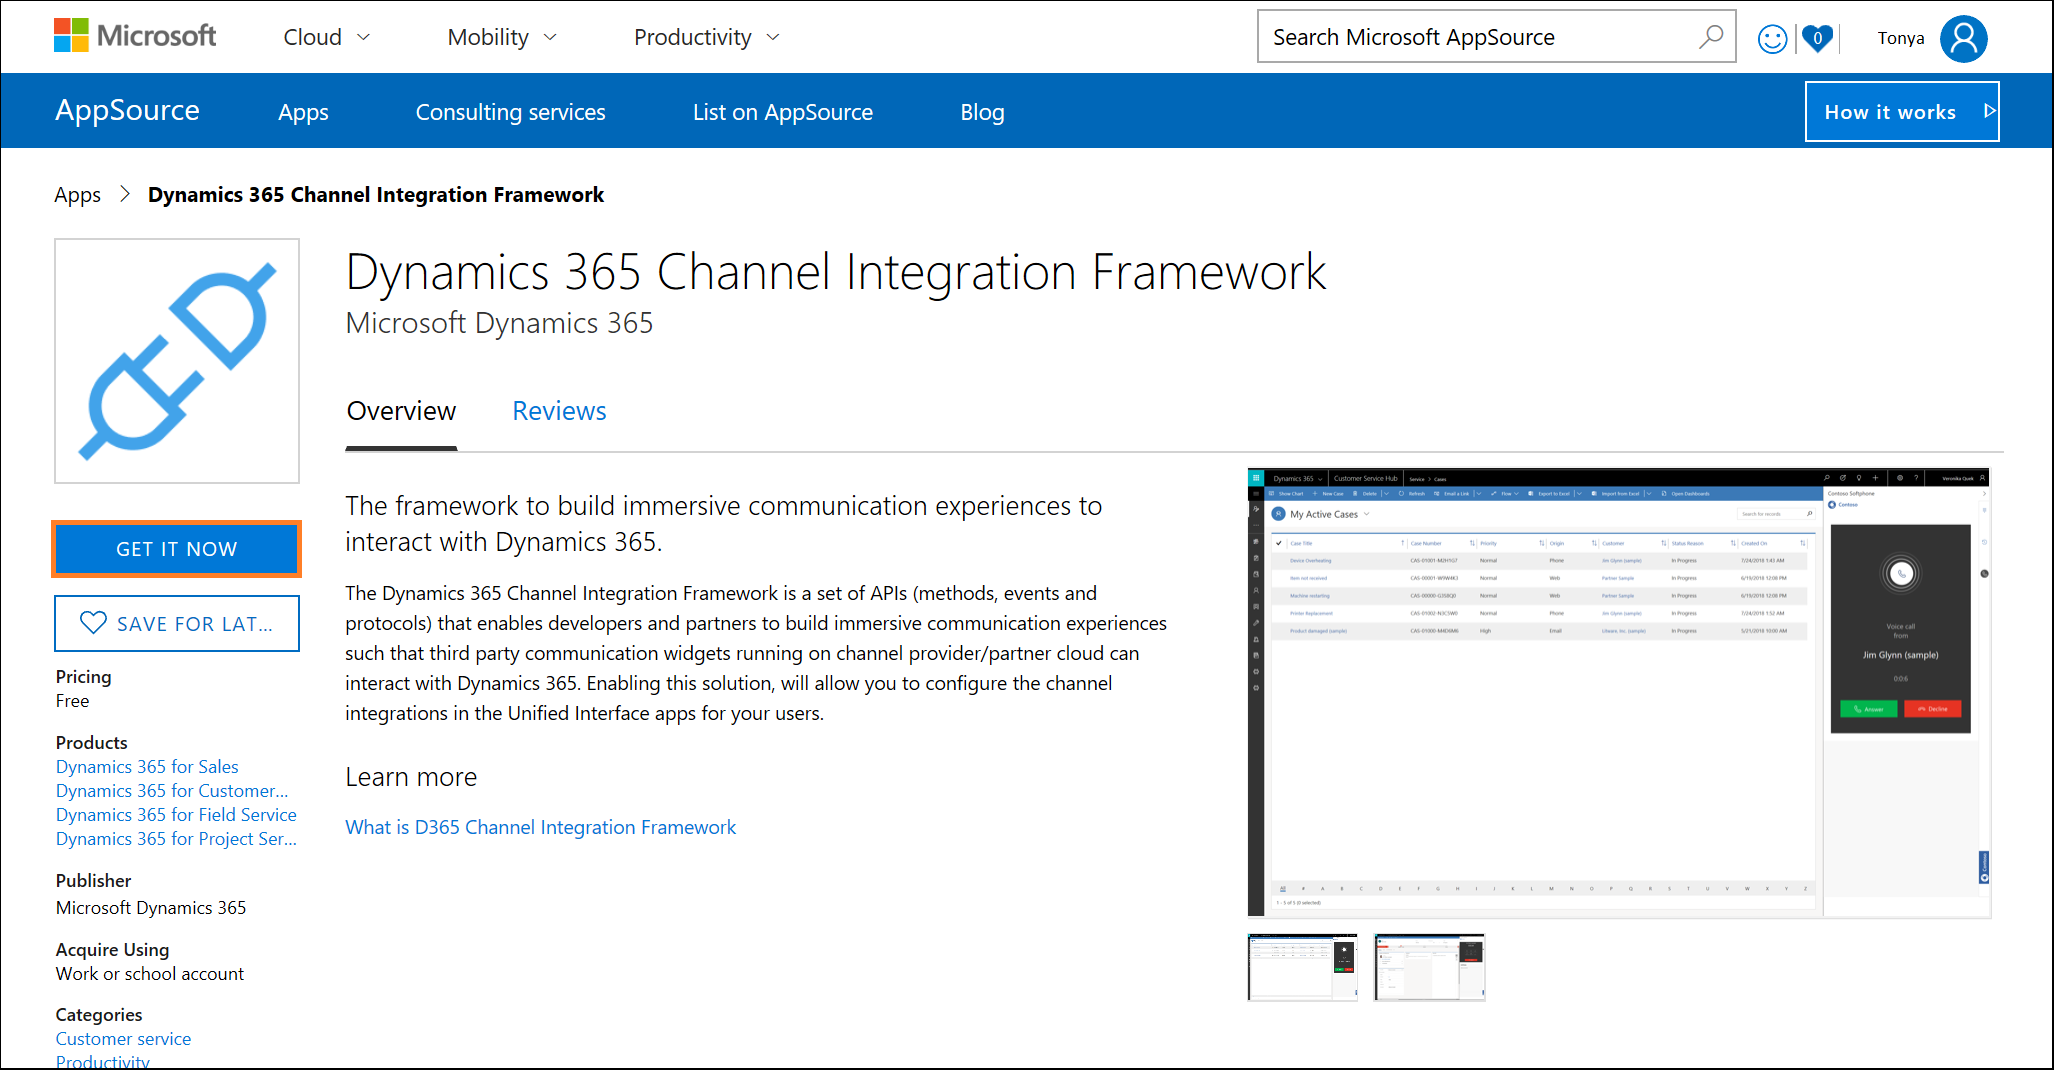 Kanaalintegratieframework voor Dynamics 365 in Microsoft AppSource.